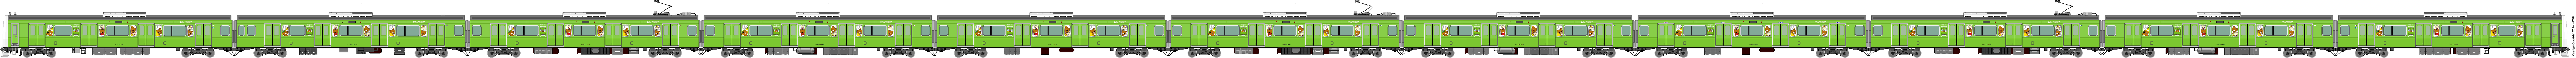 5032 - [5032] East Japan Railway 52163097445_303a6b4311_o